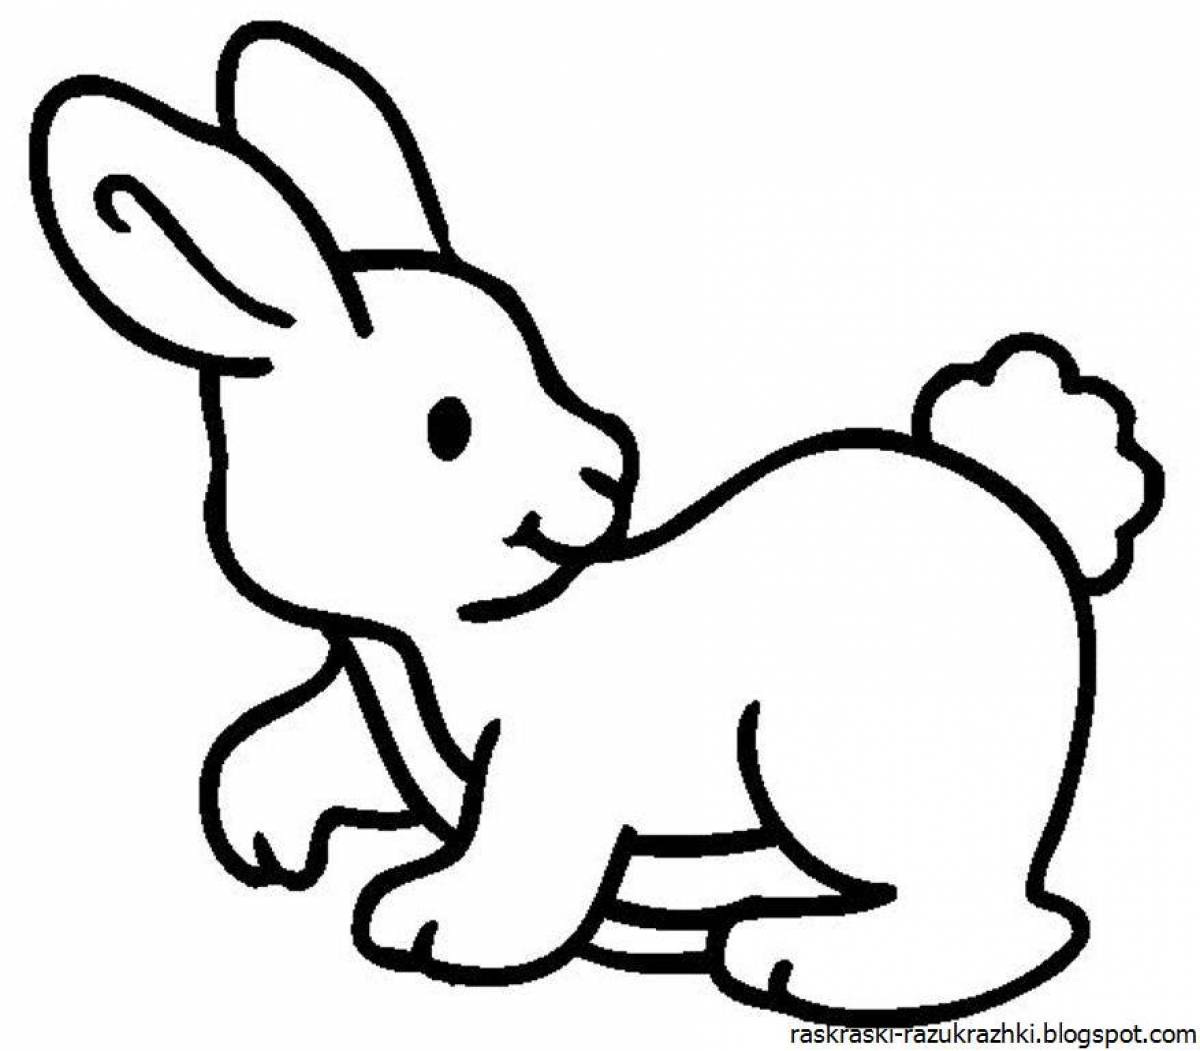 Гламурная раскраска кролик для детей 3-4 лет